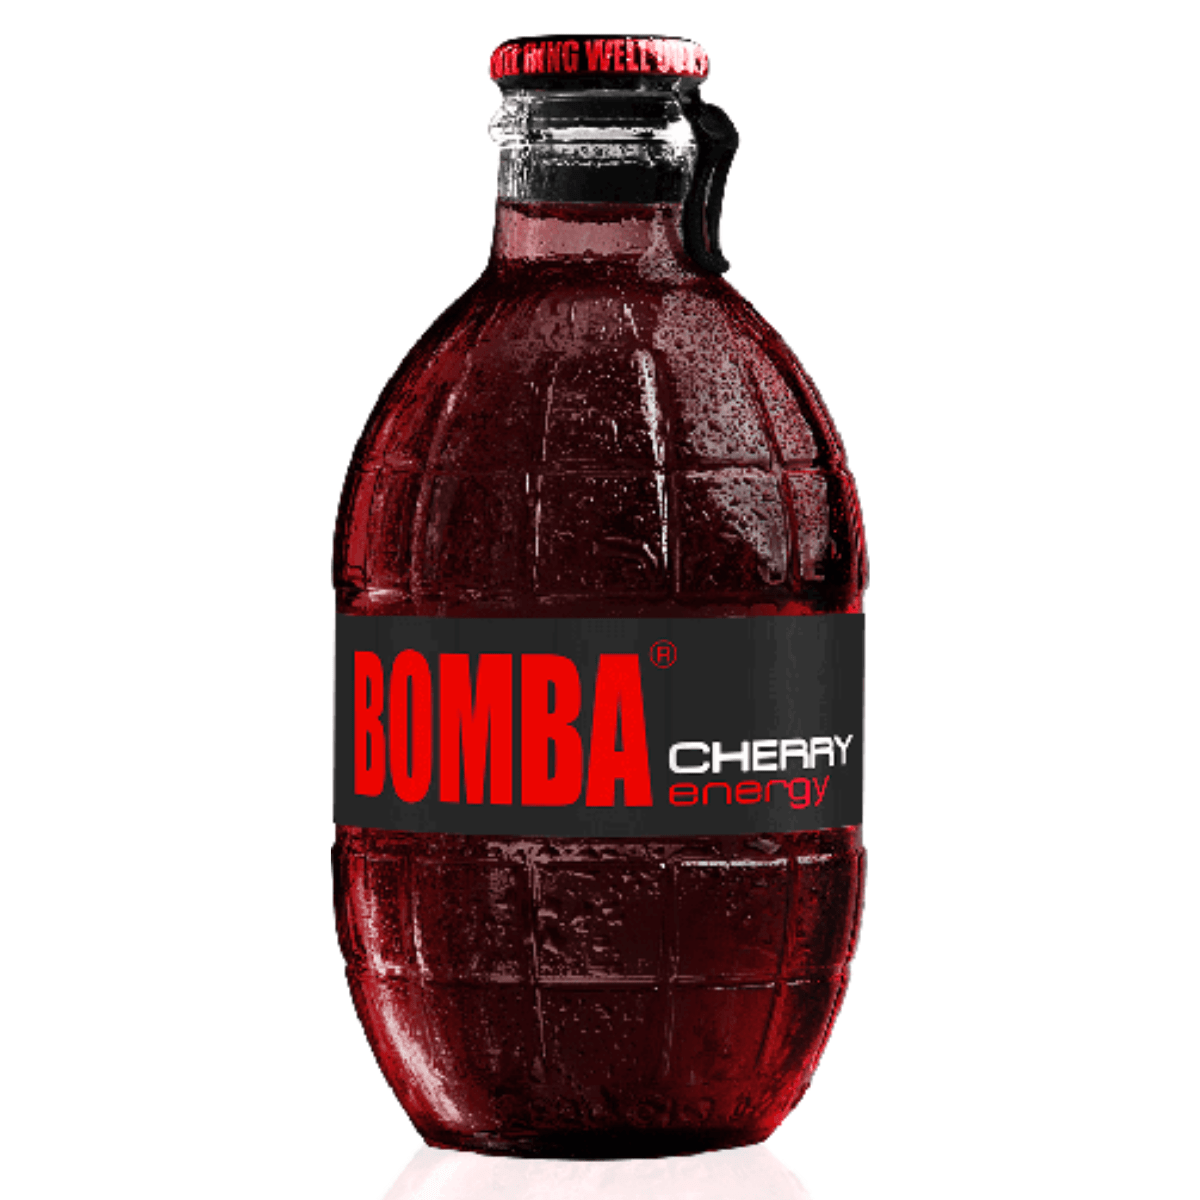 Bomba Cherry enegy 250ml